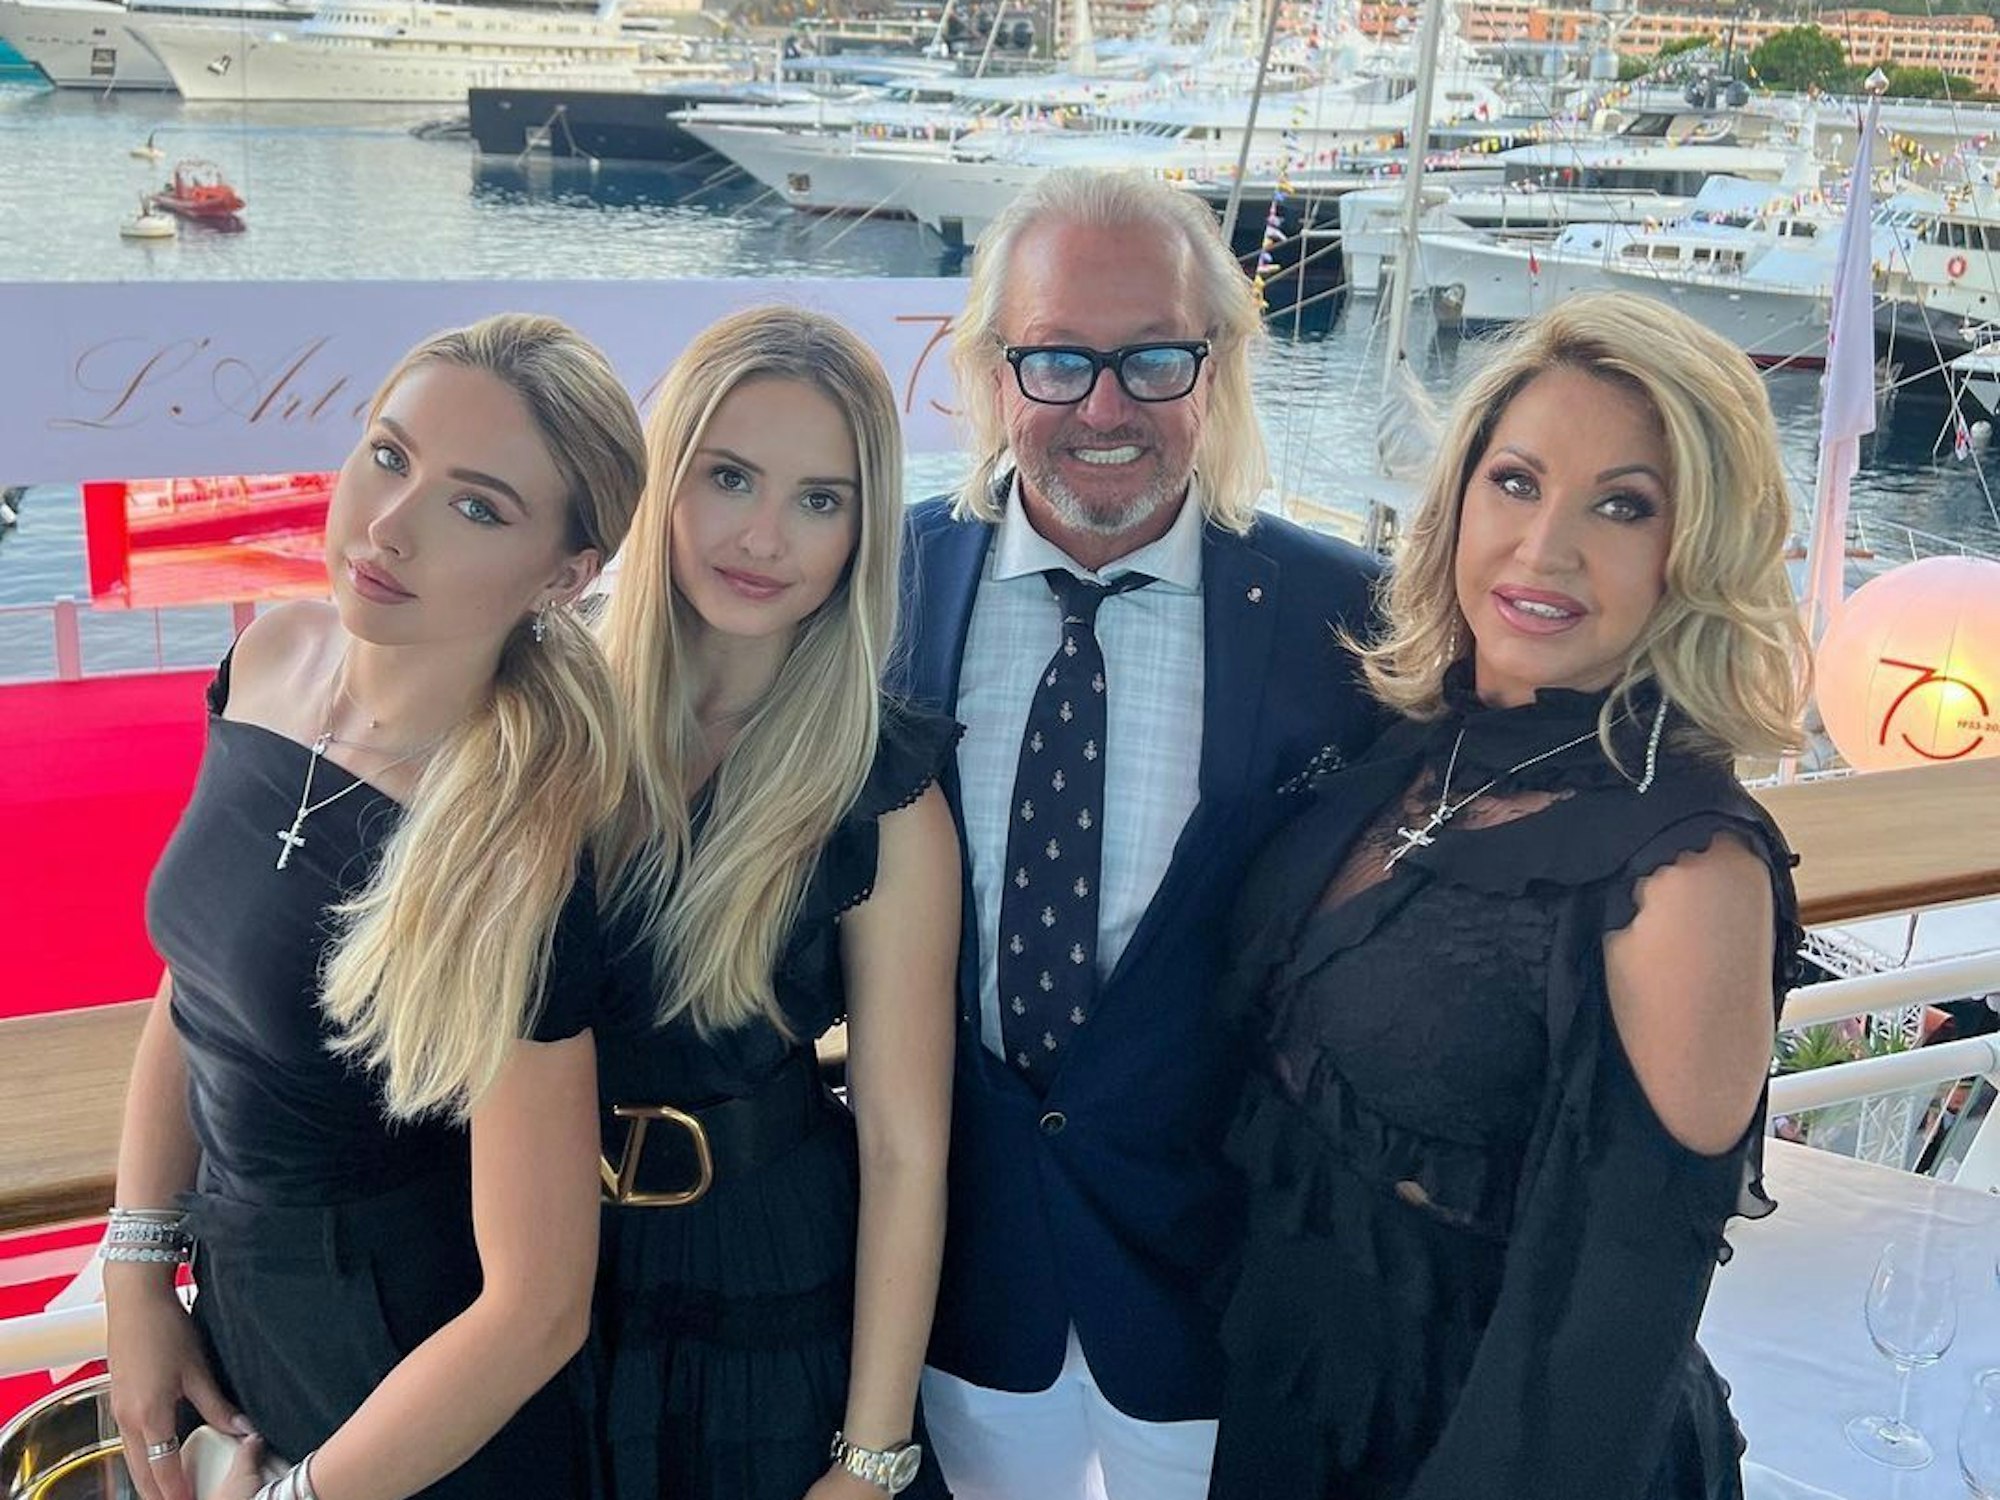 Robert und Carmen Geiss, hier mit ihren Töchtern Shania und Davina auf einem Boot.